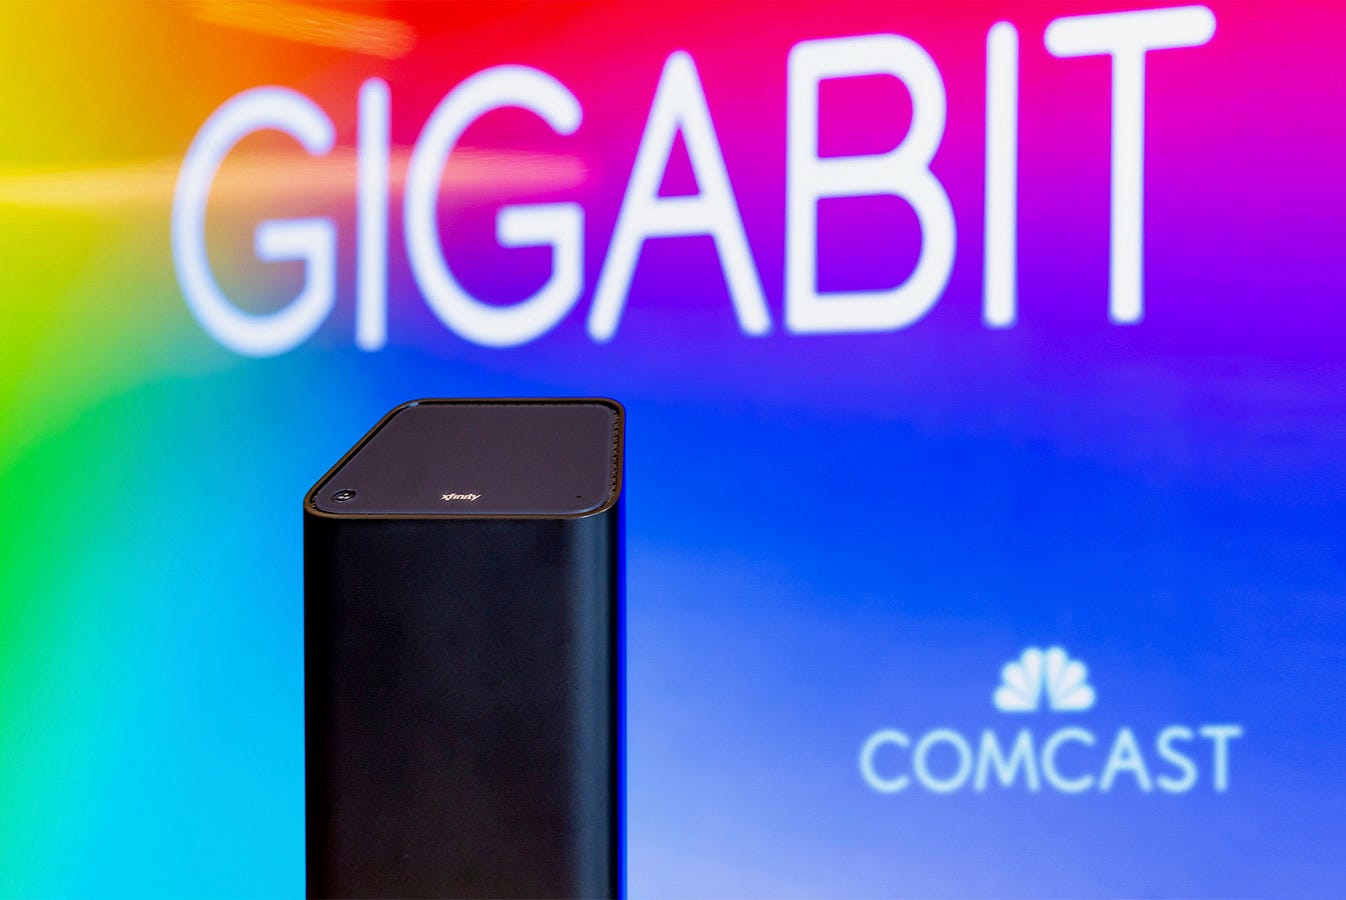 comcast-gigabit-pro